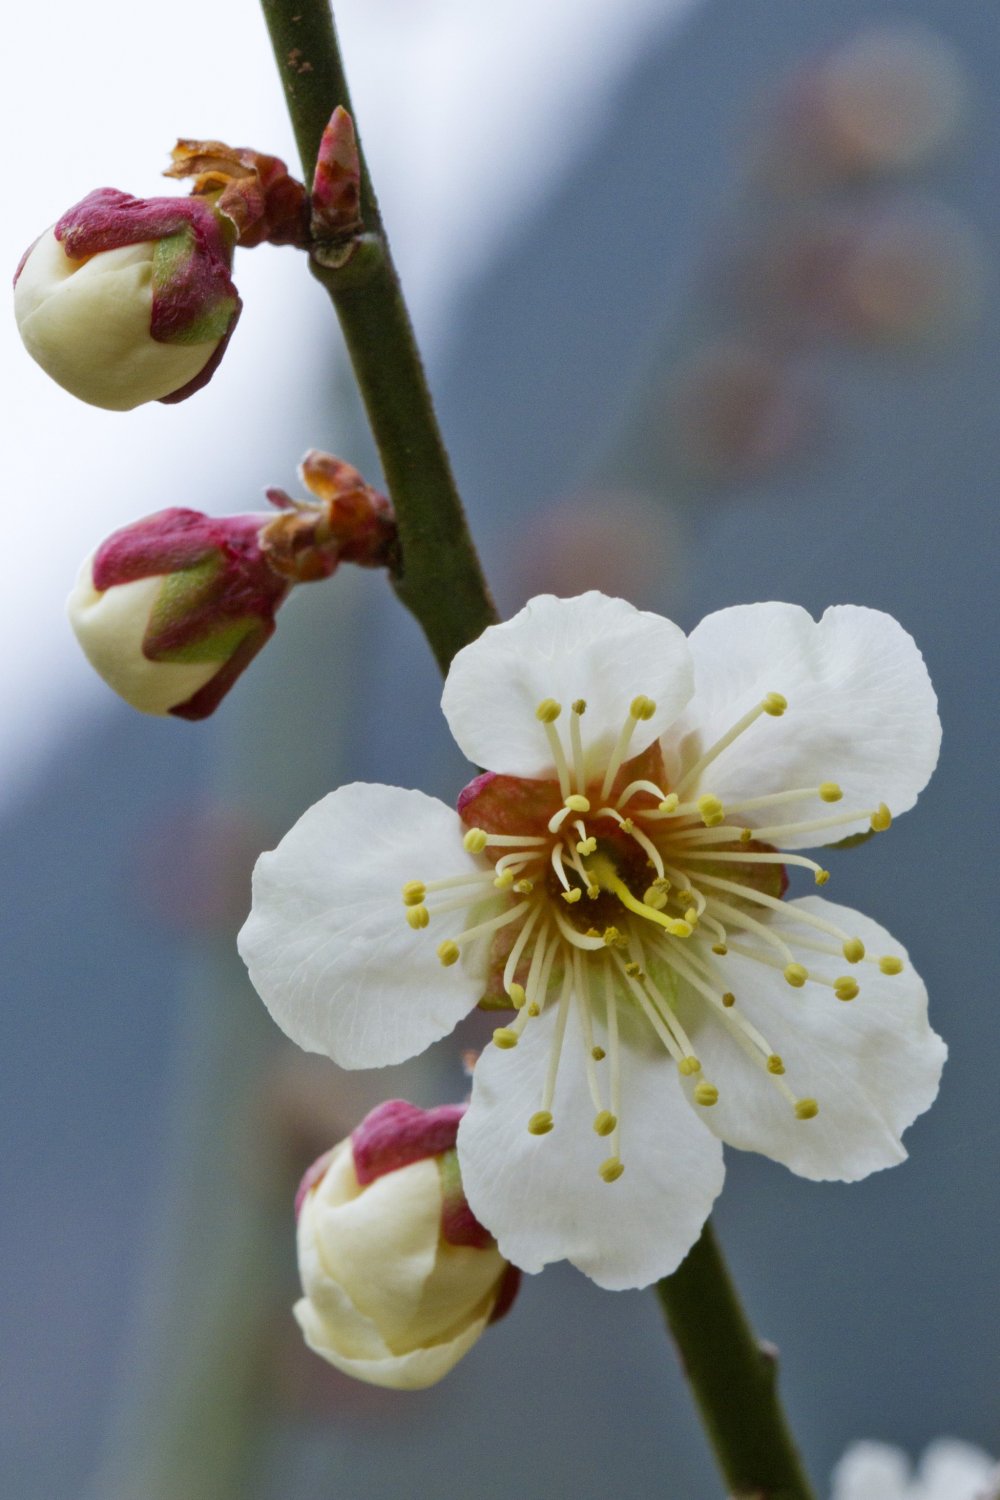 梅は有名な桜に先駆け、1ヶ月早く咲き始める